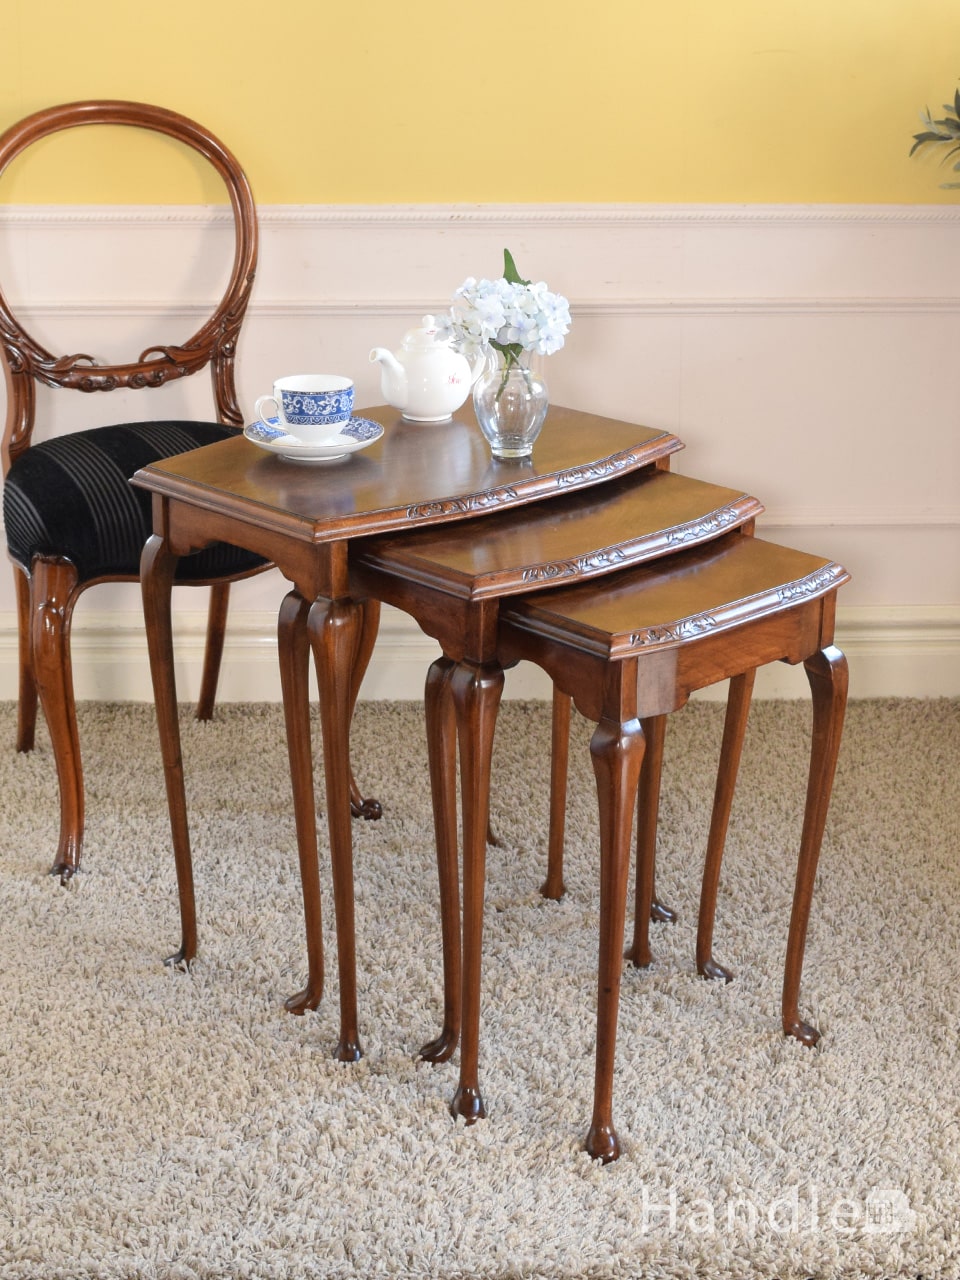 英国のアンティークのおしゃれなテーブル、細く長い足が美しいネストテーブル (k-2983-f)